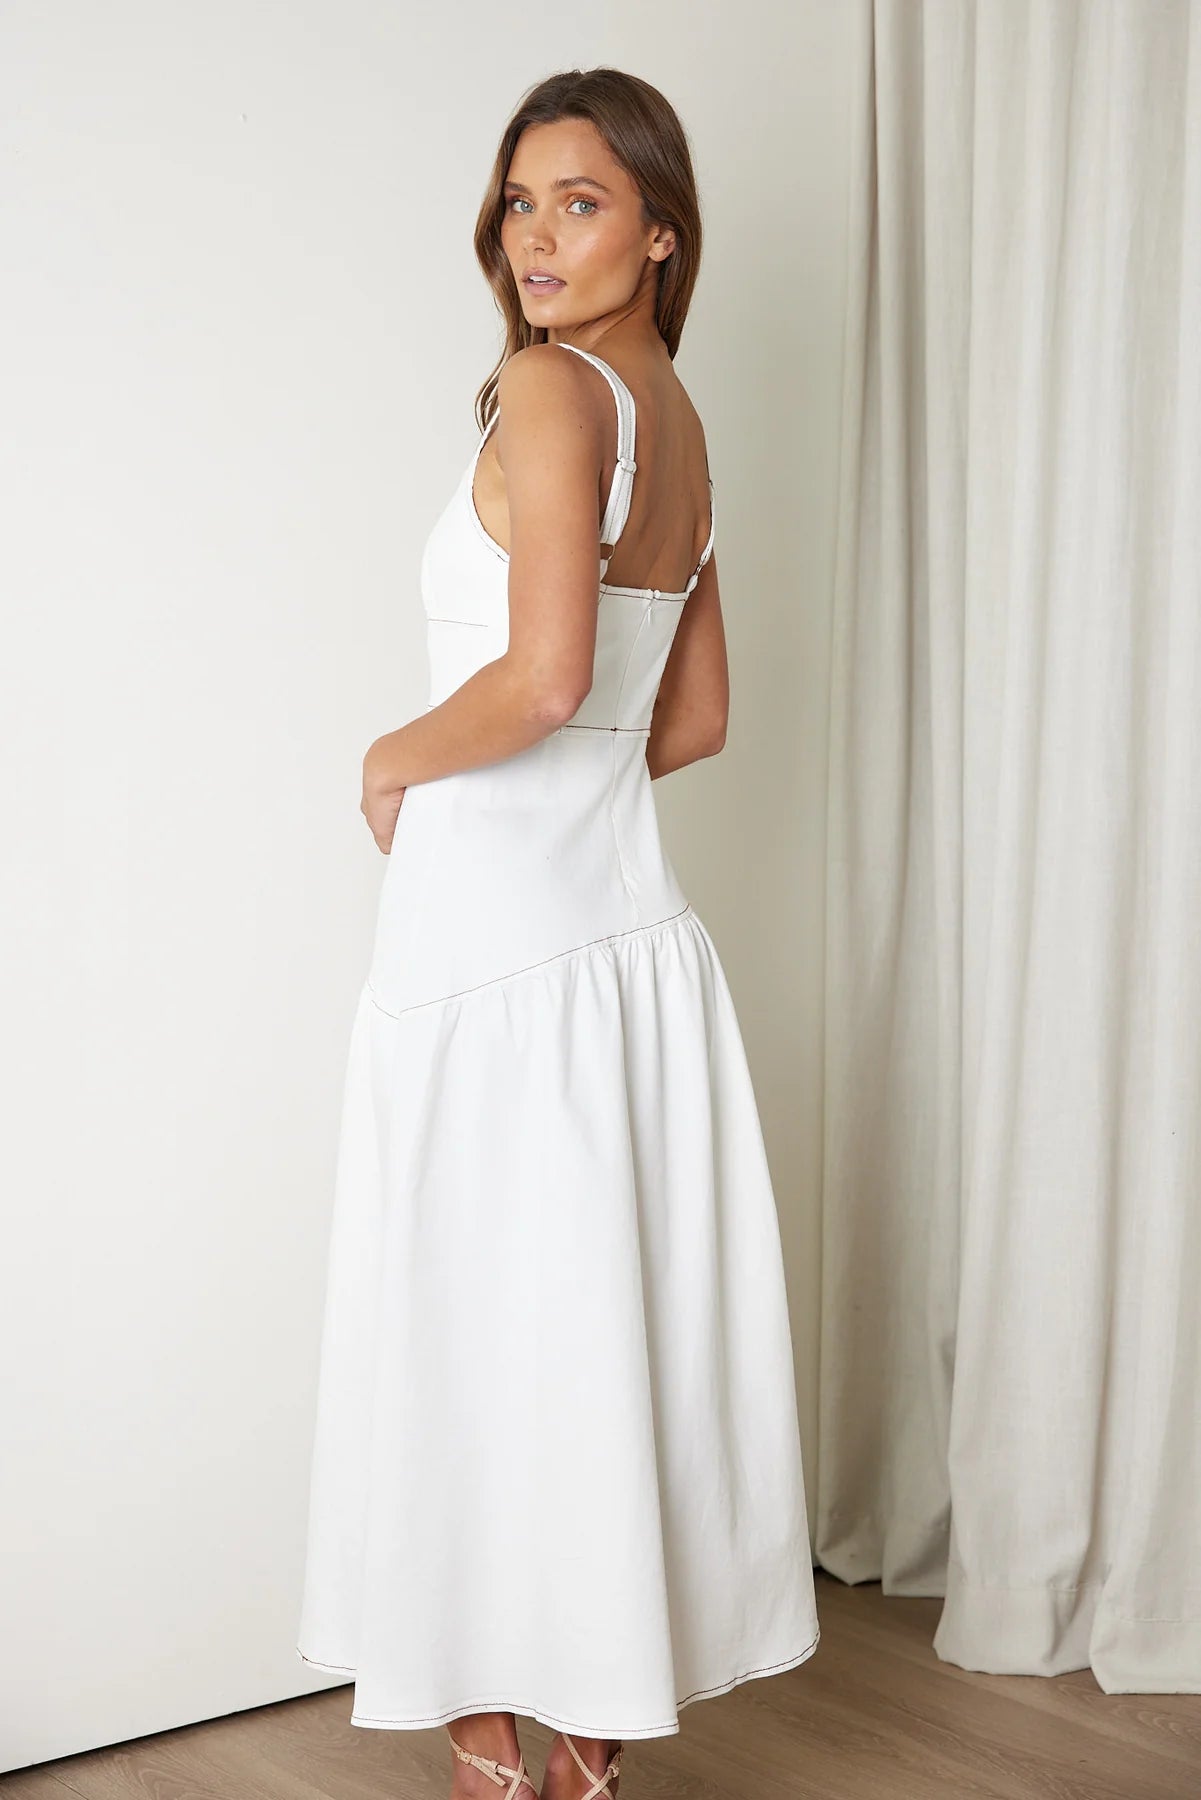 Kingston Dress - White